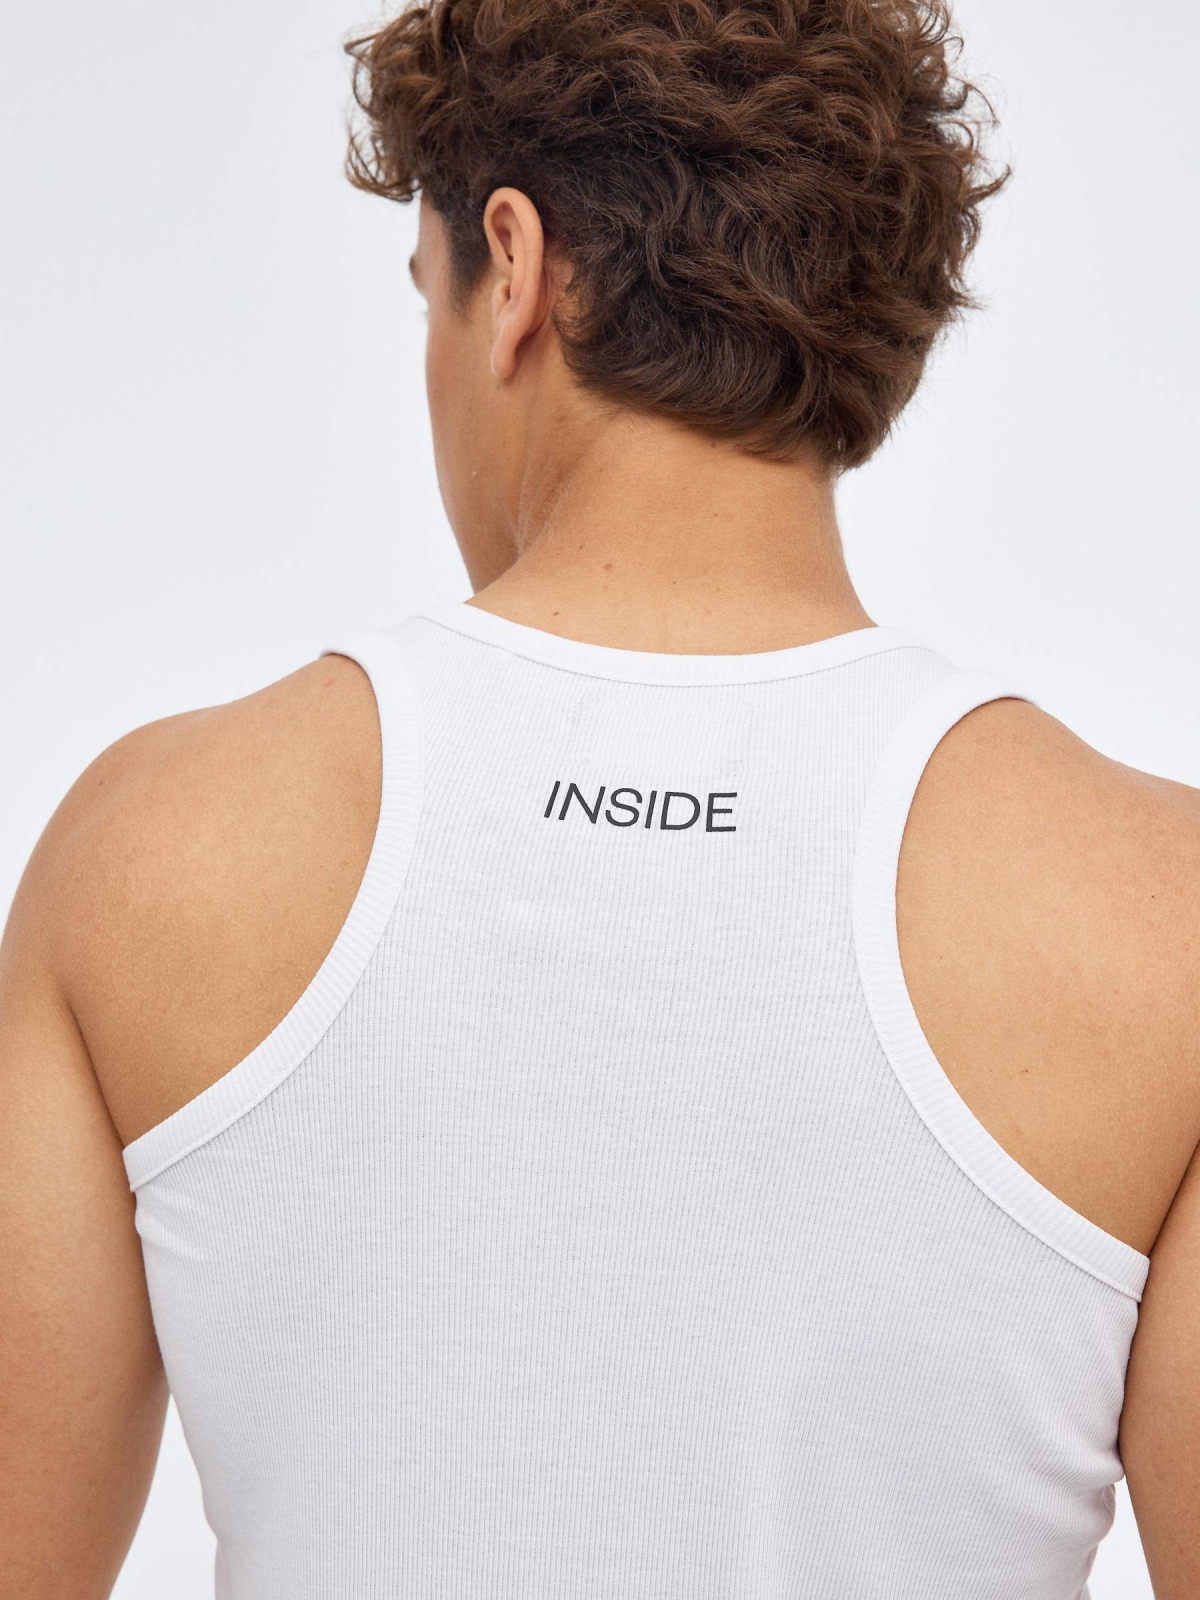 Camiseta básica espalda nadadora blanco vista detalle